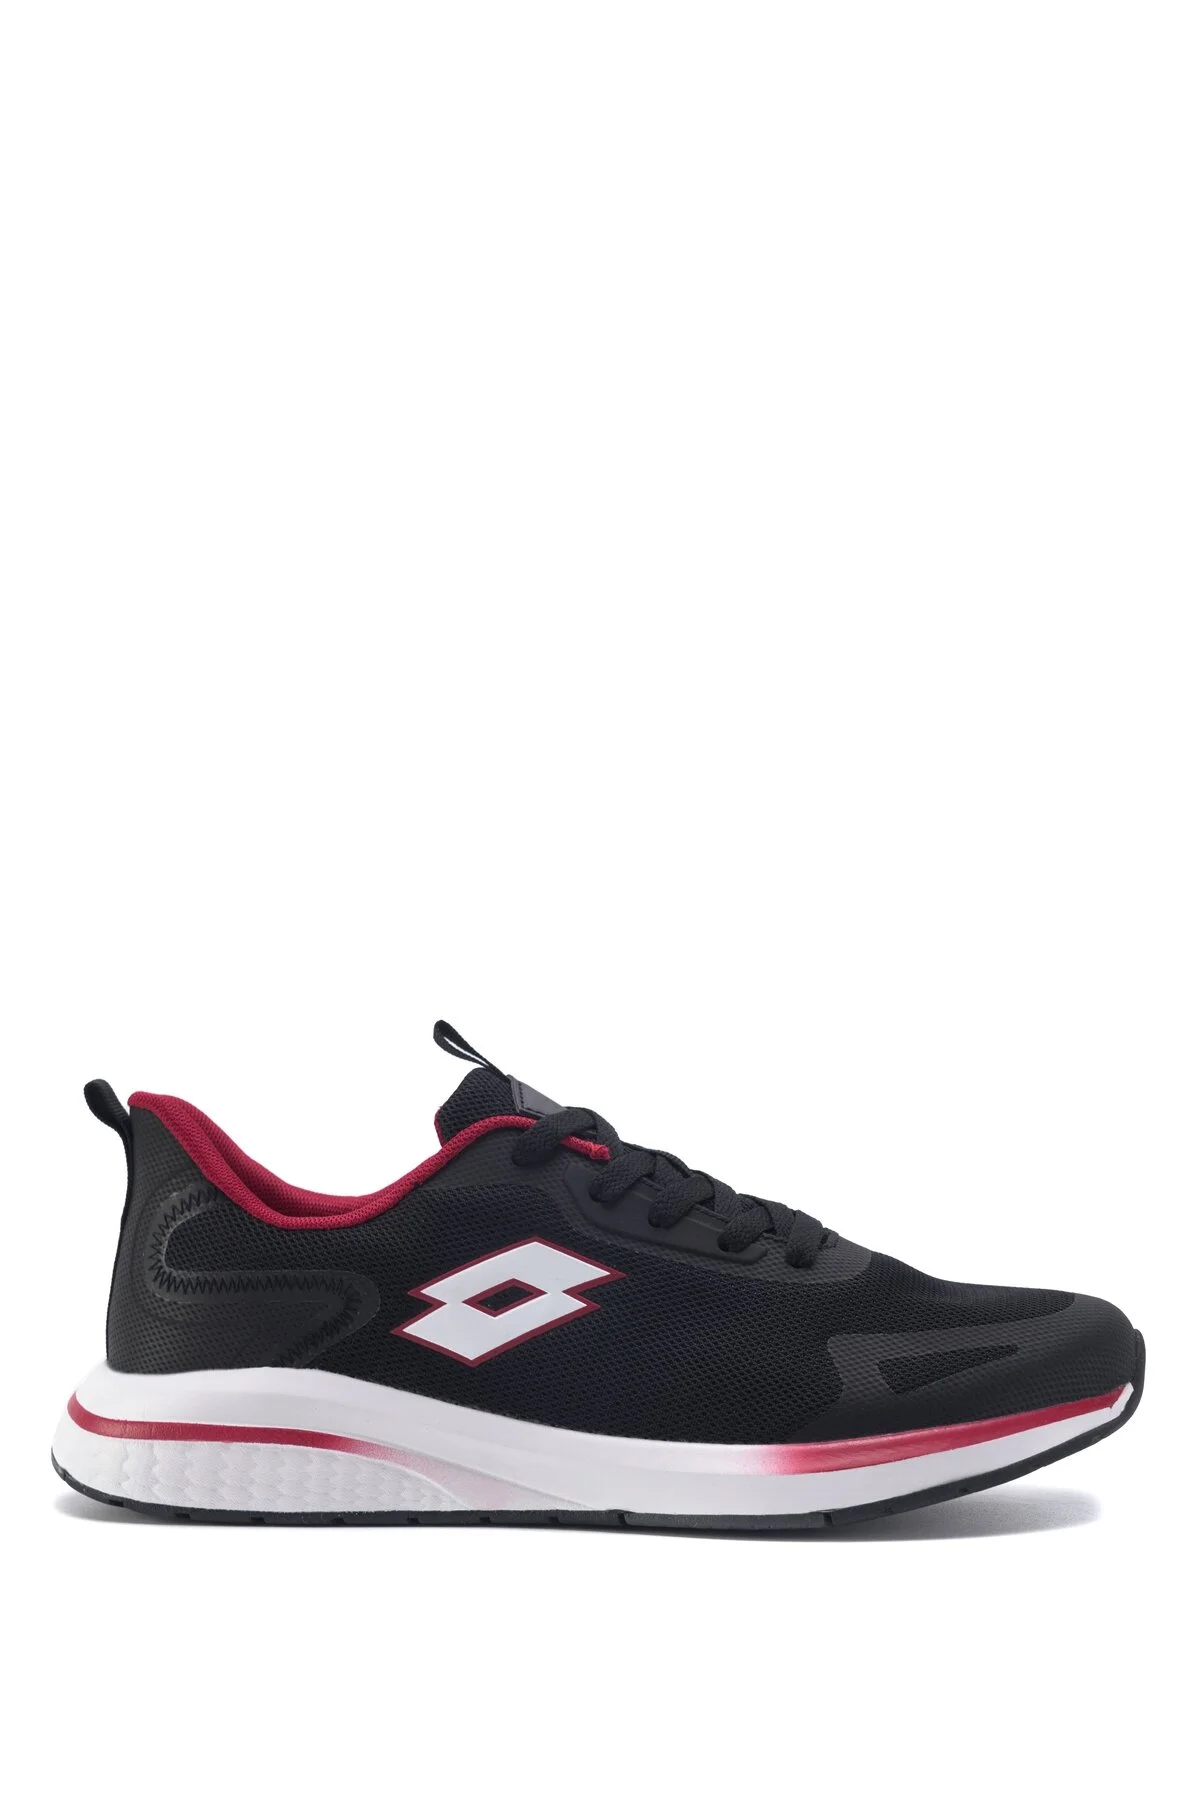 UNION 3FX Erkek Koşu Ayakkabısı-Siyah